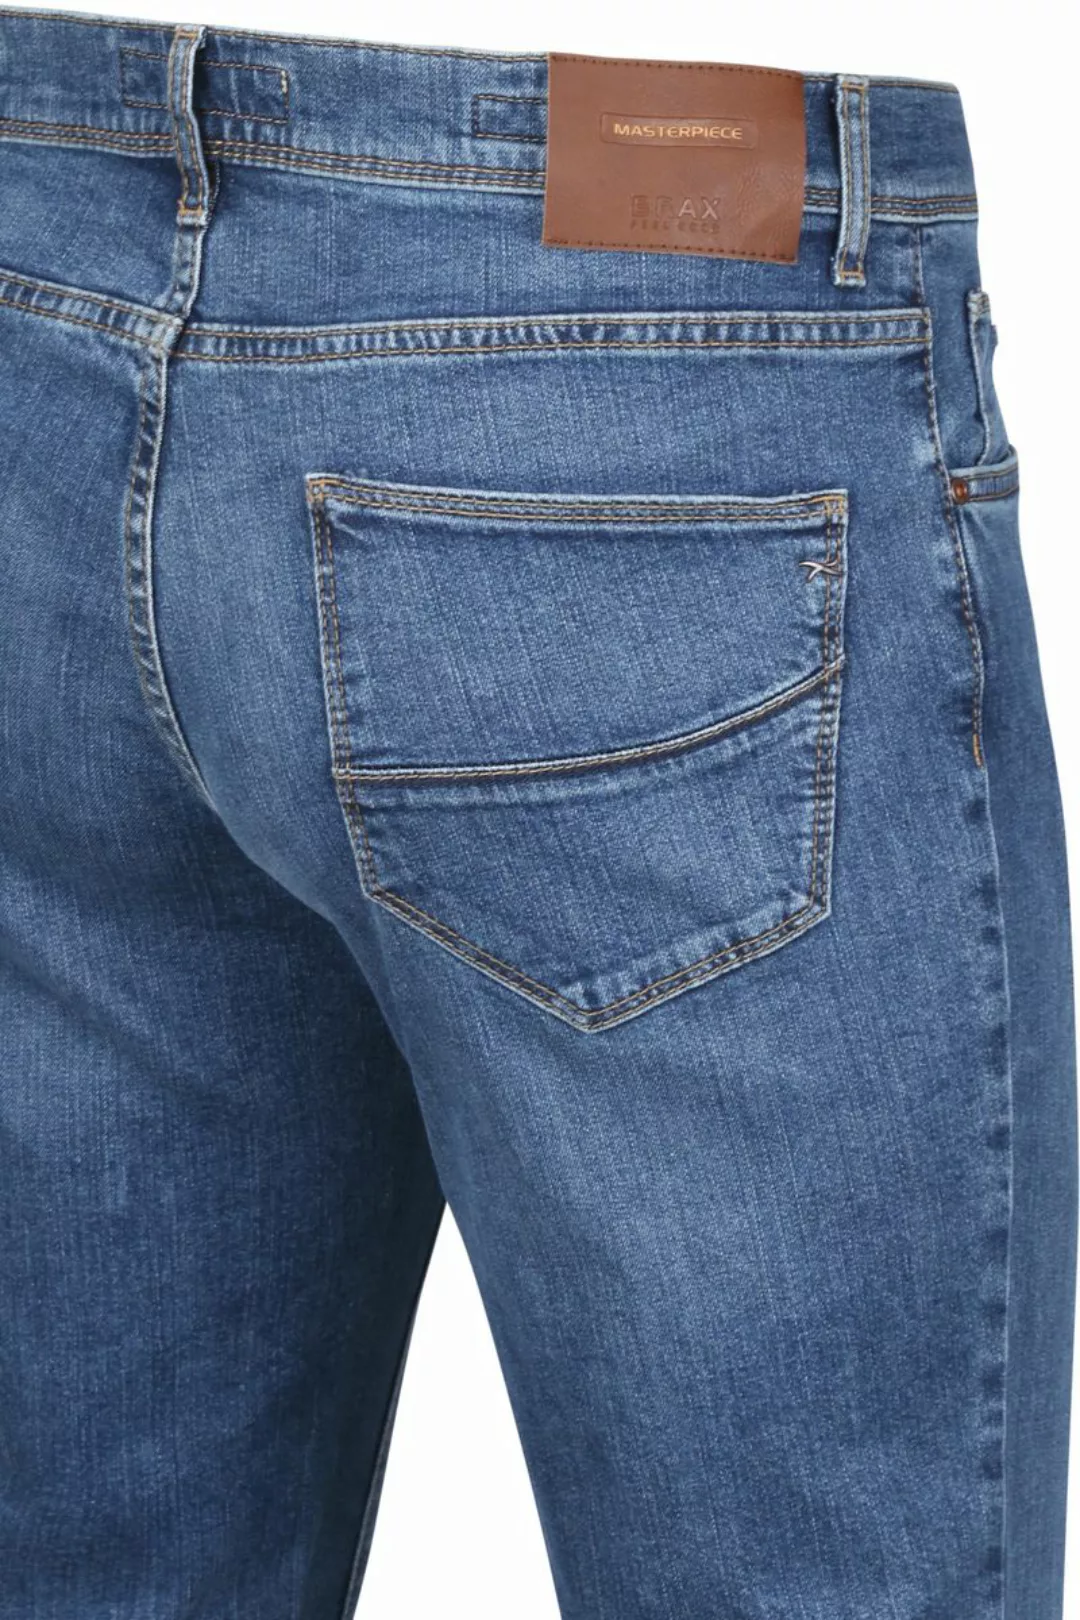 Brax Cadiz Jeans Masterpiece Regular Blau - Größe W 33 - L 30 günstig online kaufen